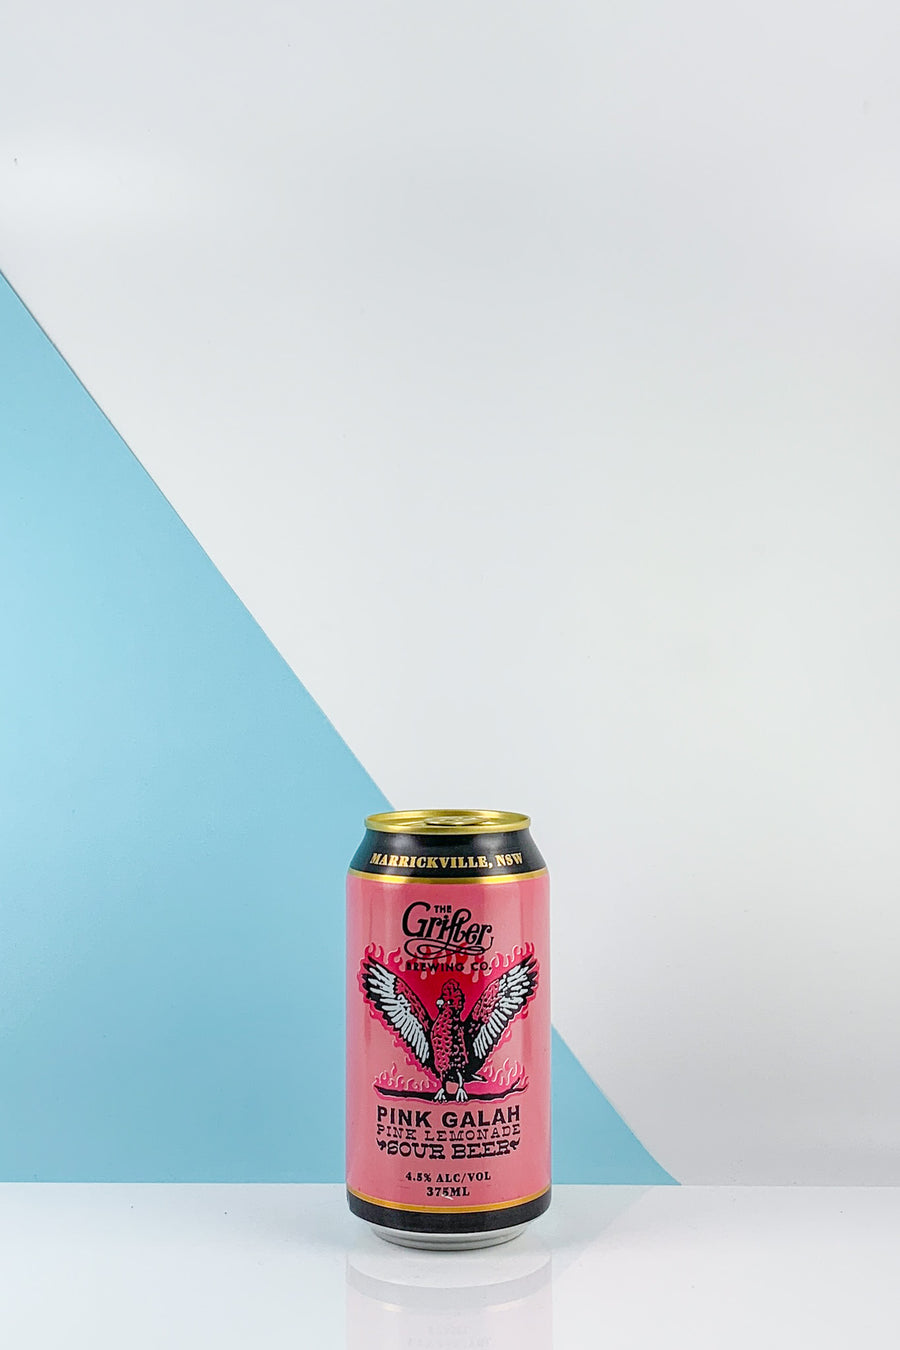 Grifter Brewing Co. Pink Galah Lemonade Sour 4pk